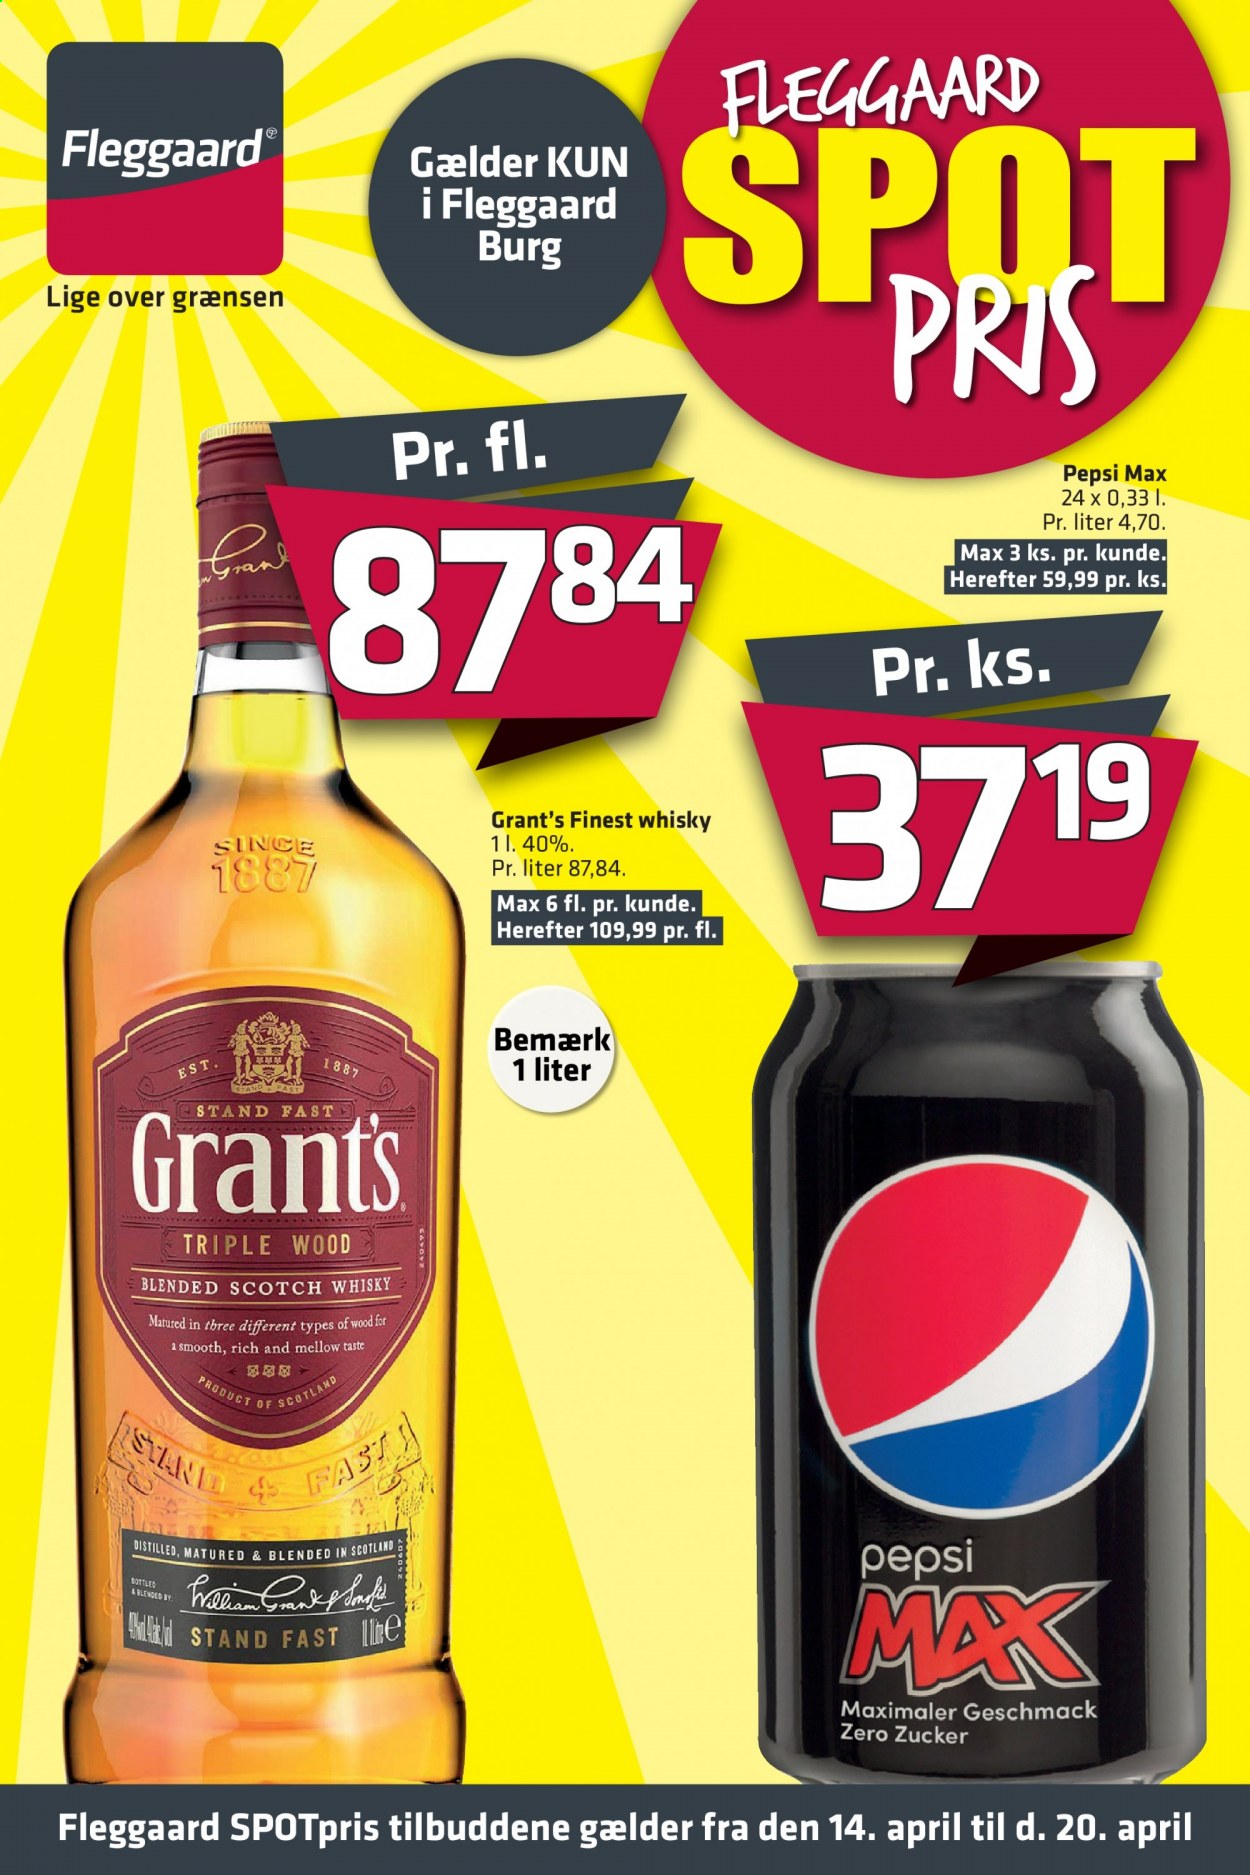 thumbnail - Fleggaard tilbud  - 14.4.2021 - 20.4.2021 - tilbudsprodukter - Pepsi, Pepsi Max, Grant‘s, whisky. Side 1.